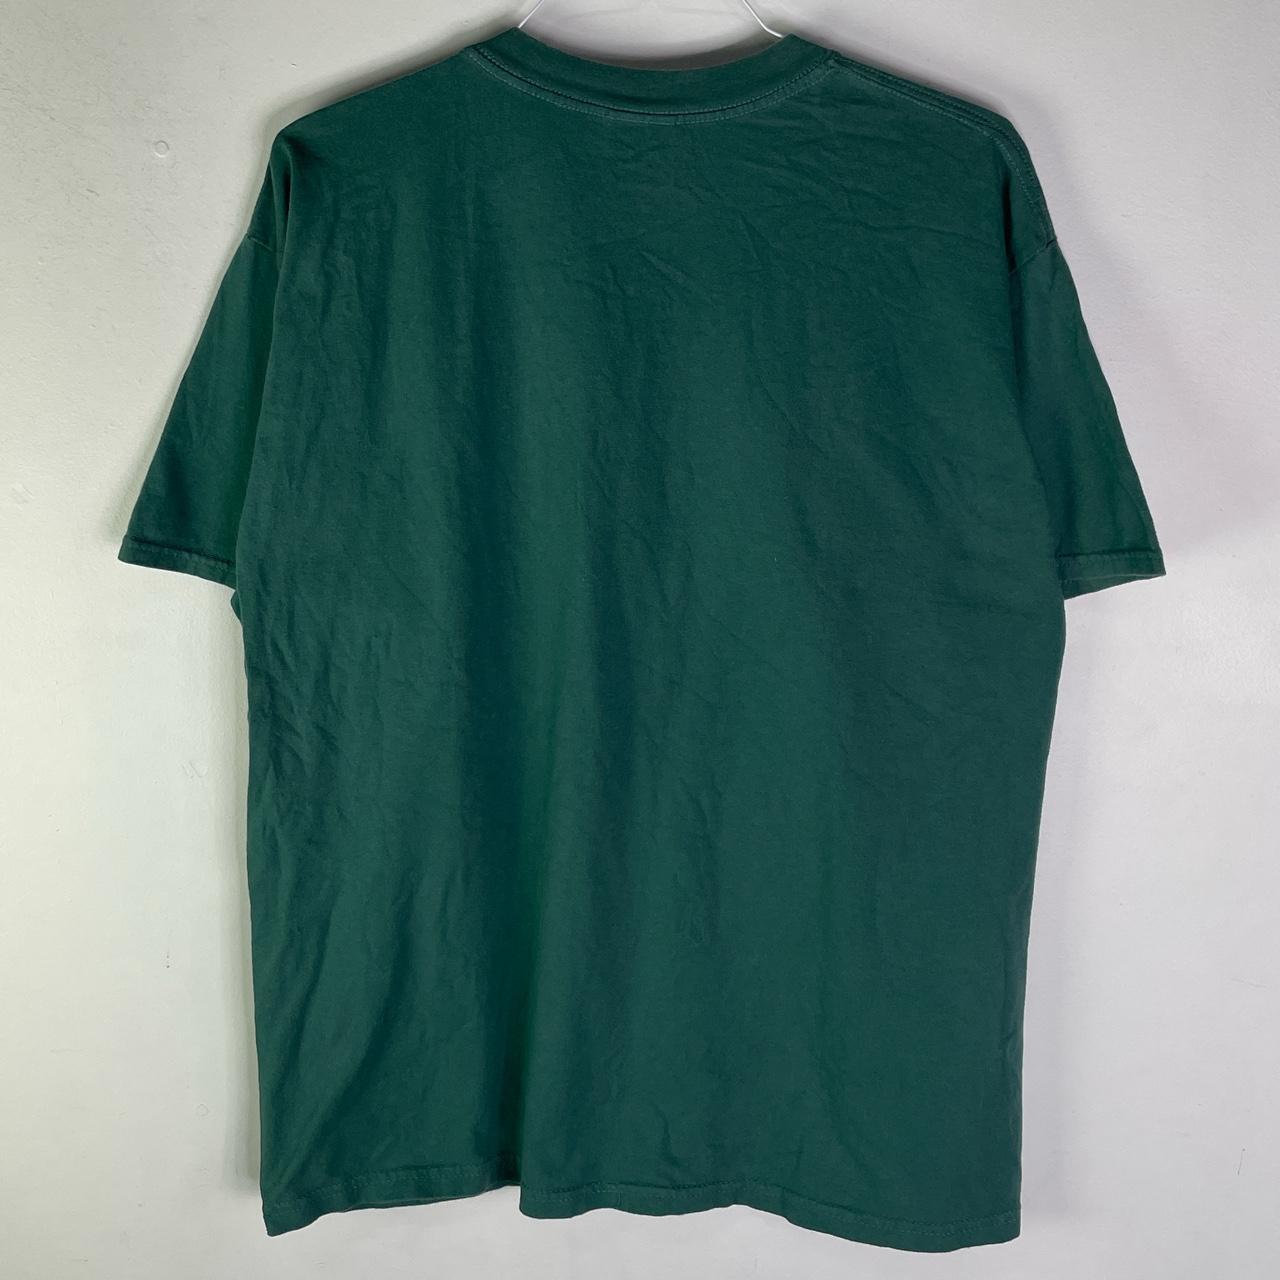 Vintage Y2K older than dirt green T-shirt Size -... - Depop